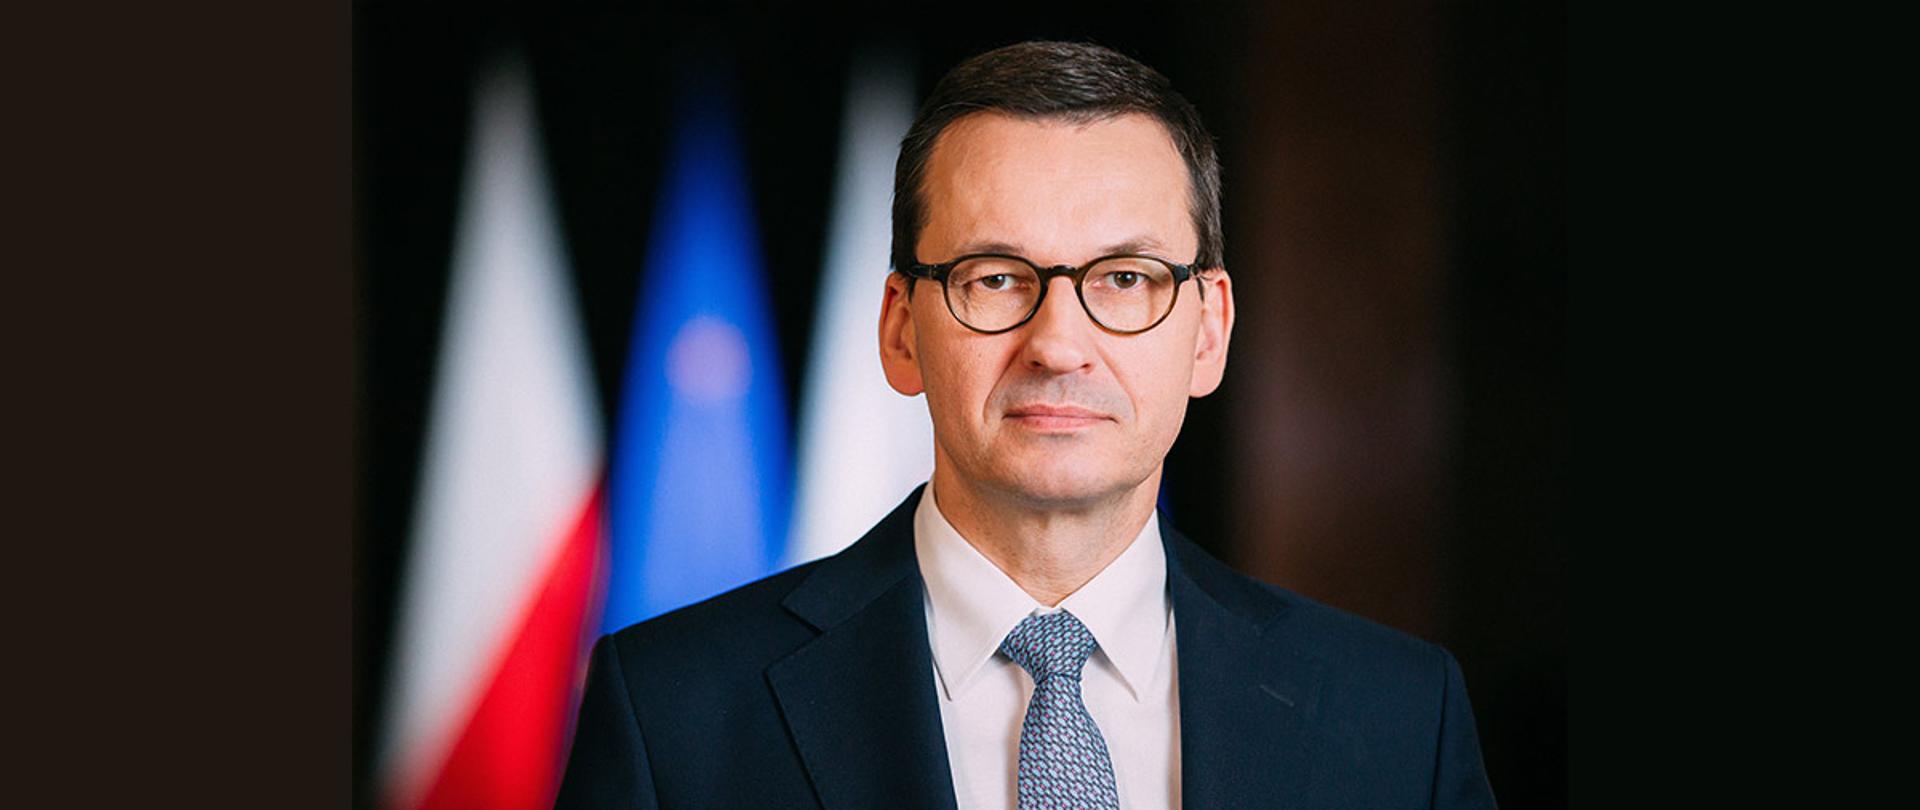 Prezes Rady Ministrów
Mateusz Morawiecki
